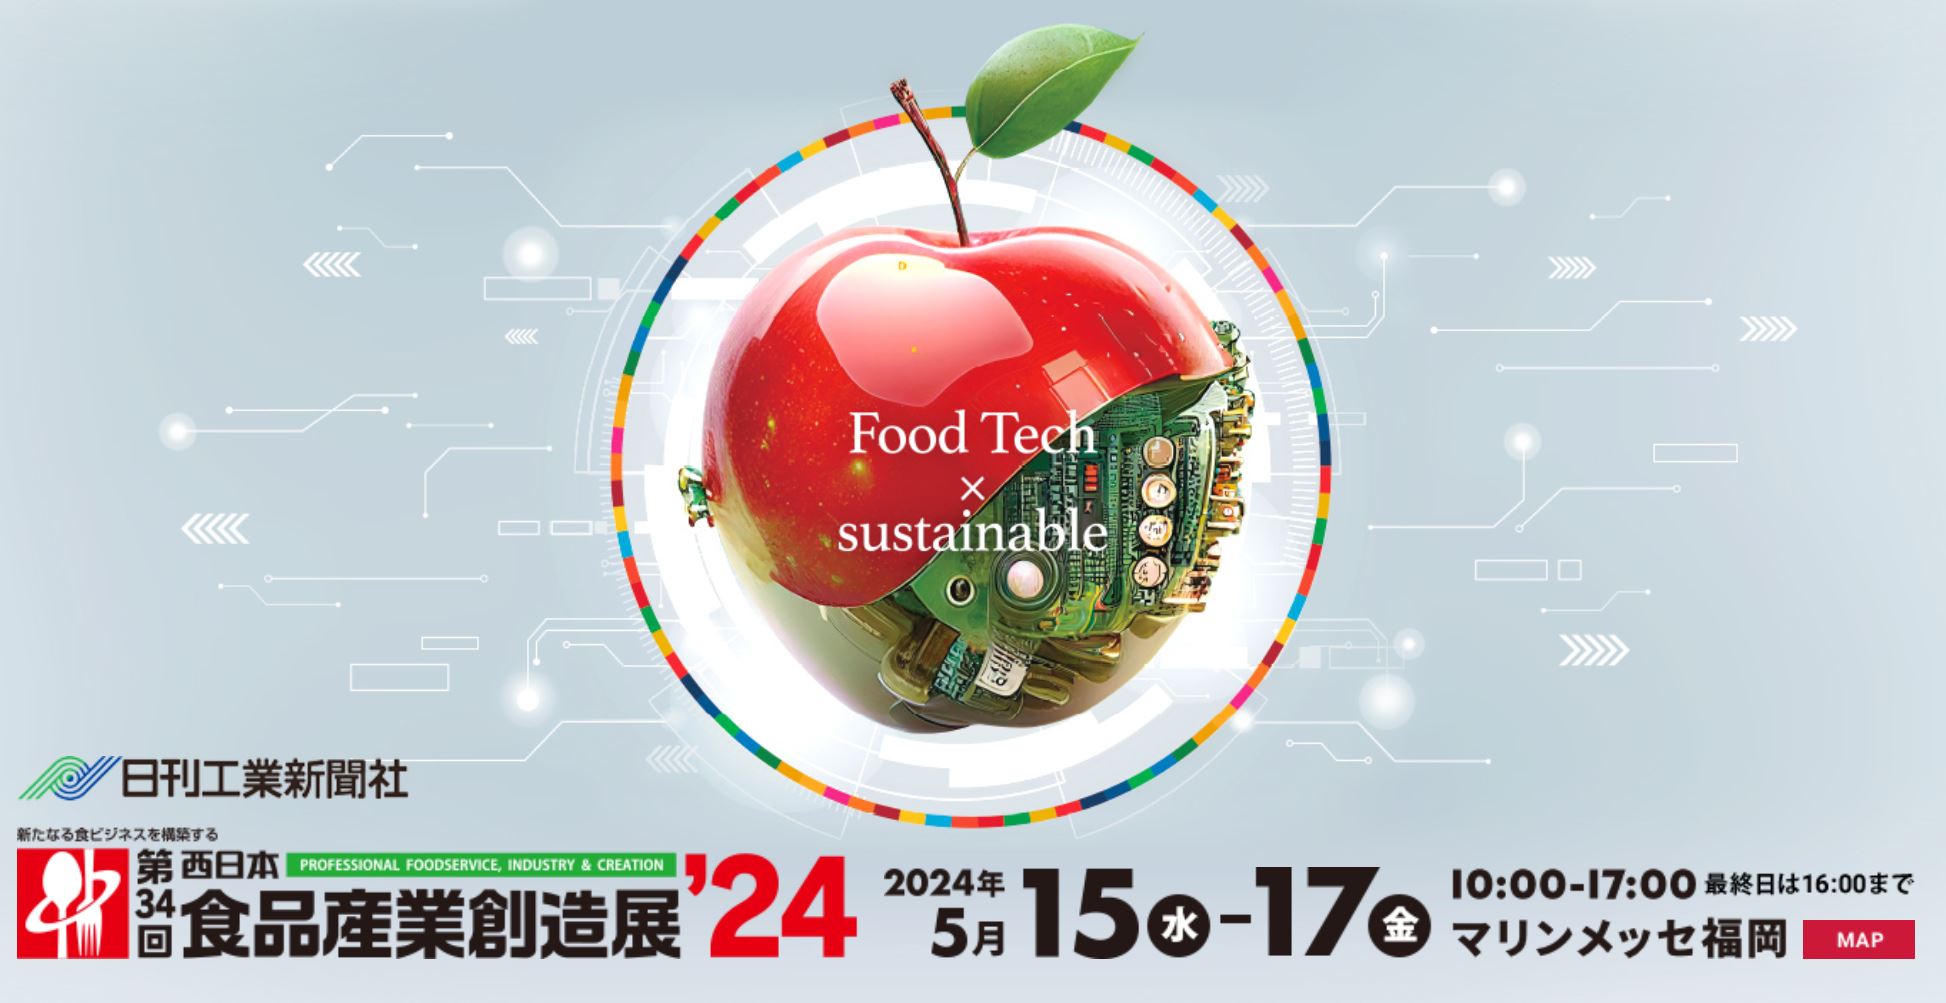 第34回 西日本食品産業創造展’24 に出展します